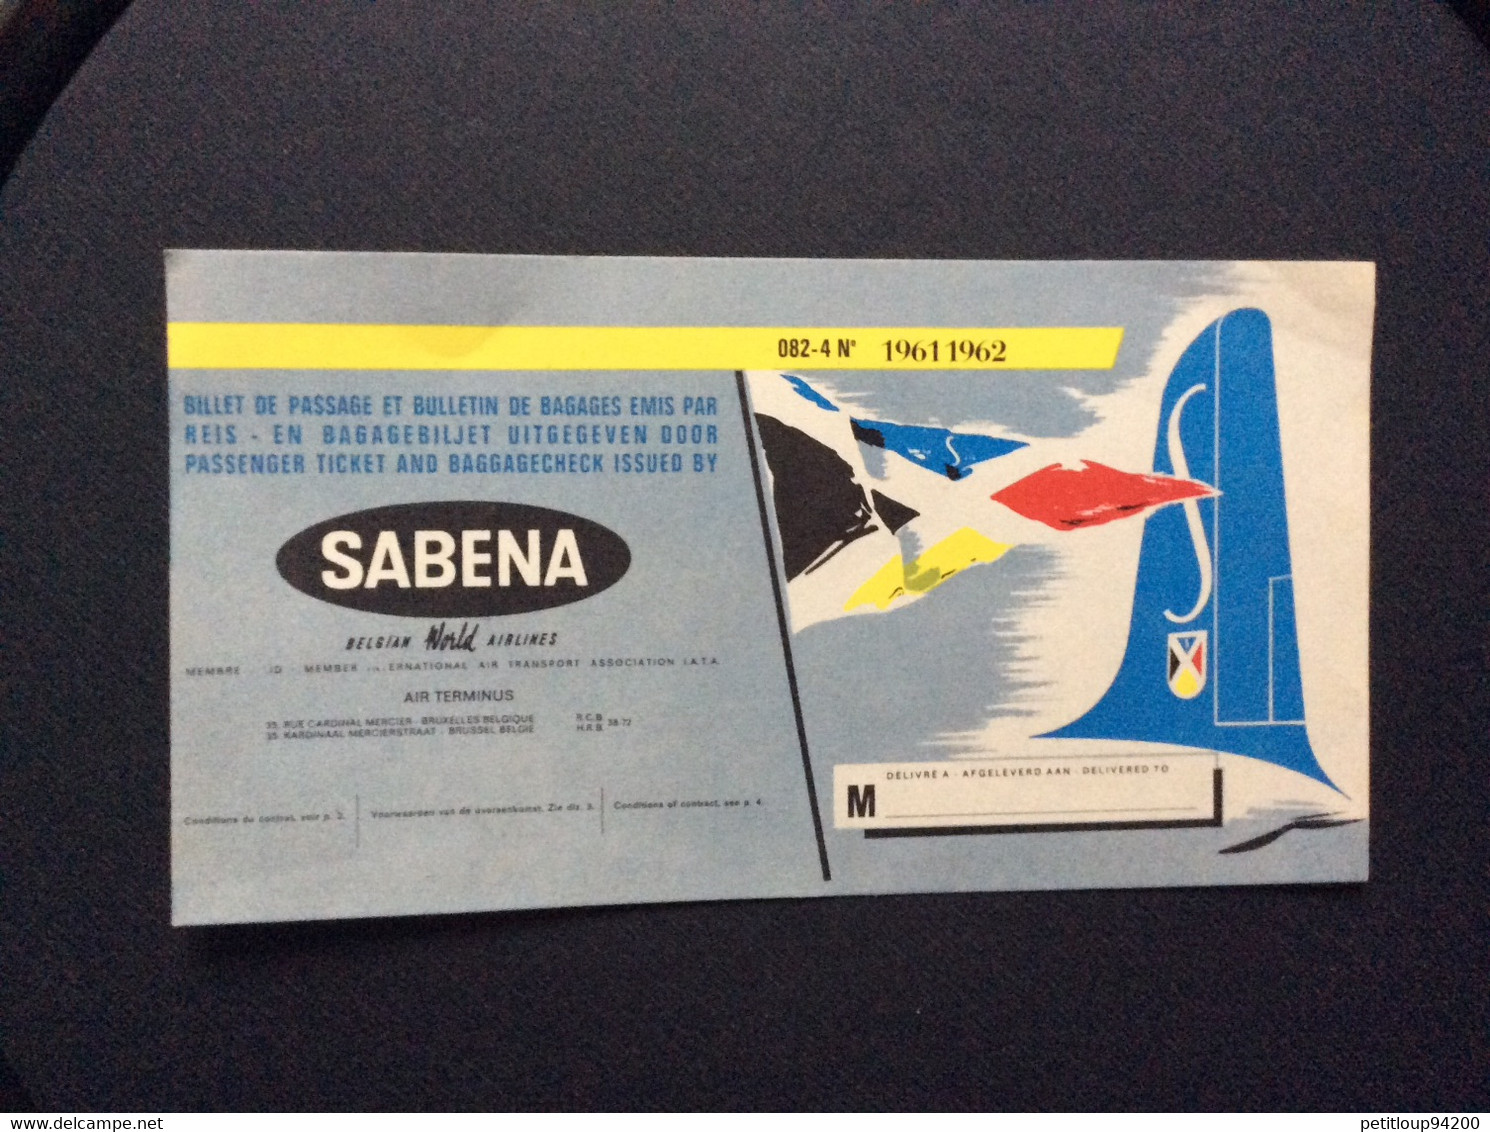 SABENA  Publicite  BILLET DE PASSAGE ET BULLETIN DE BAGAGES  PASSENGER TICKET AND BAGGAGE CHECK  1961 1962 - Pubblicità